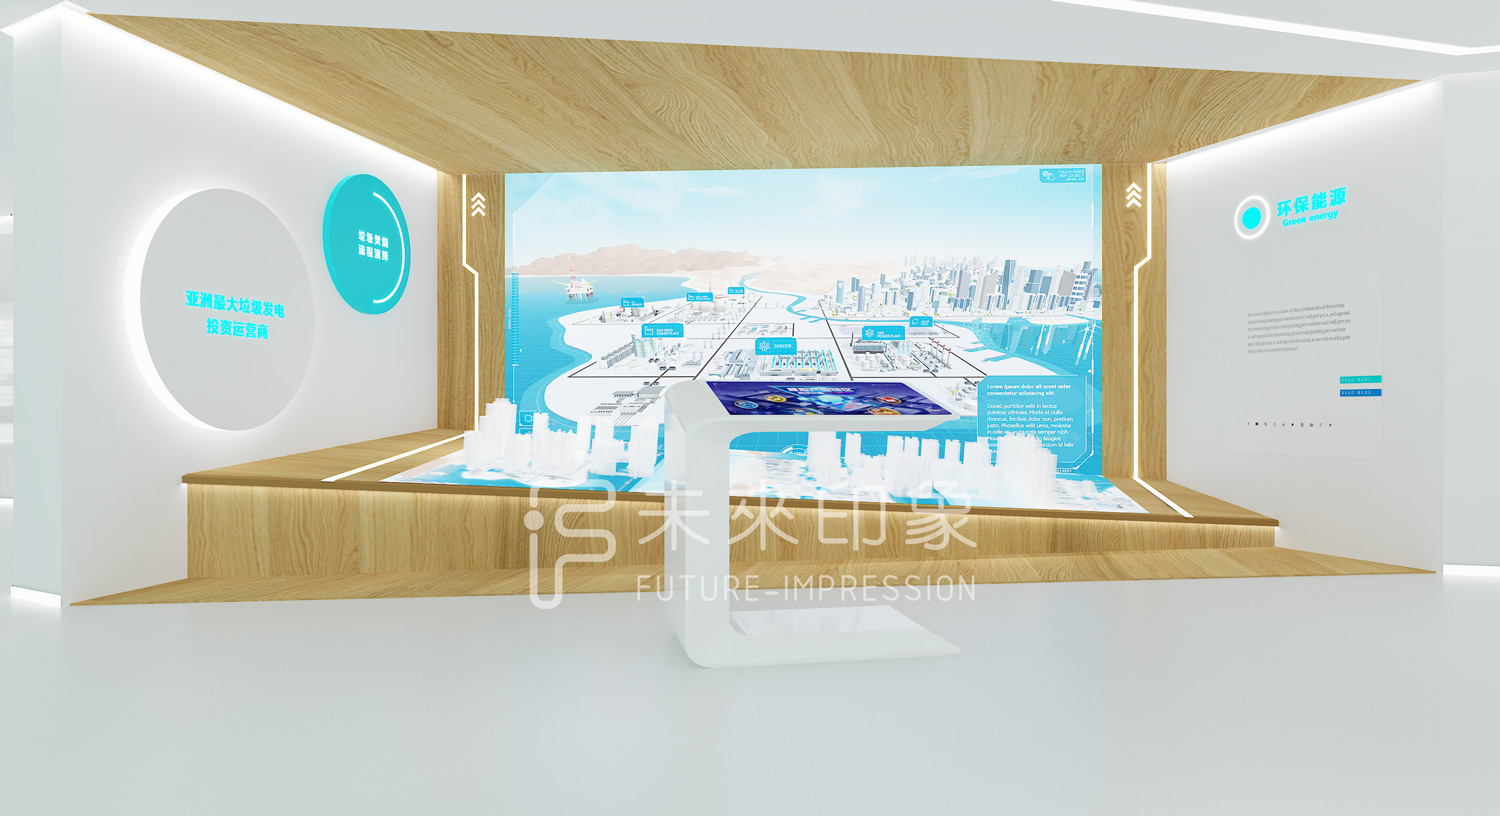 新空间 新体验——未来印象展厅设计